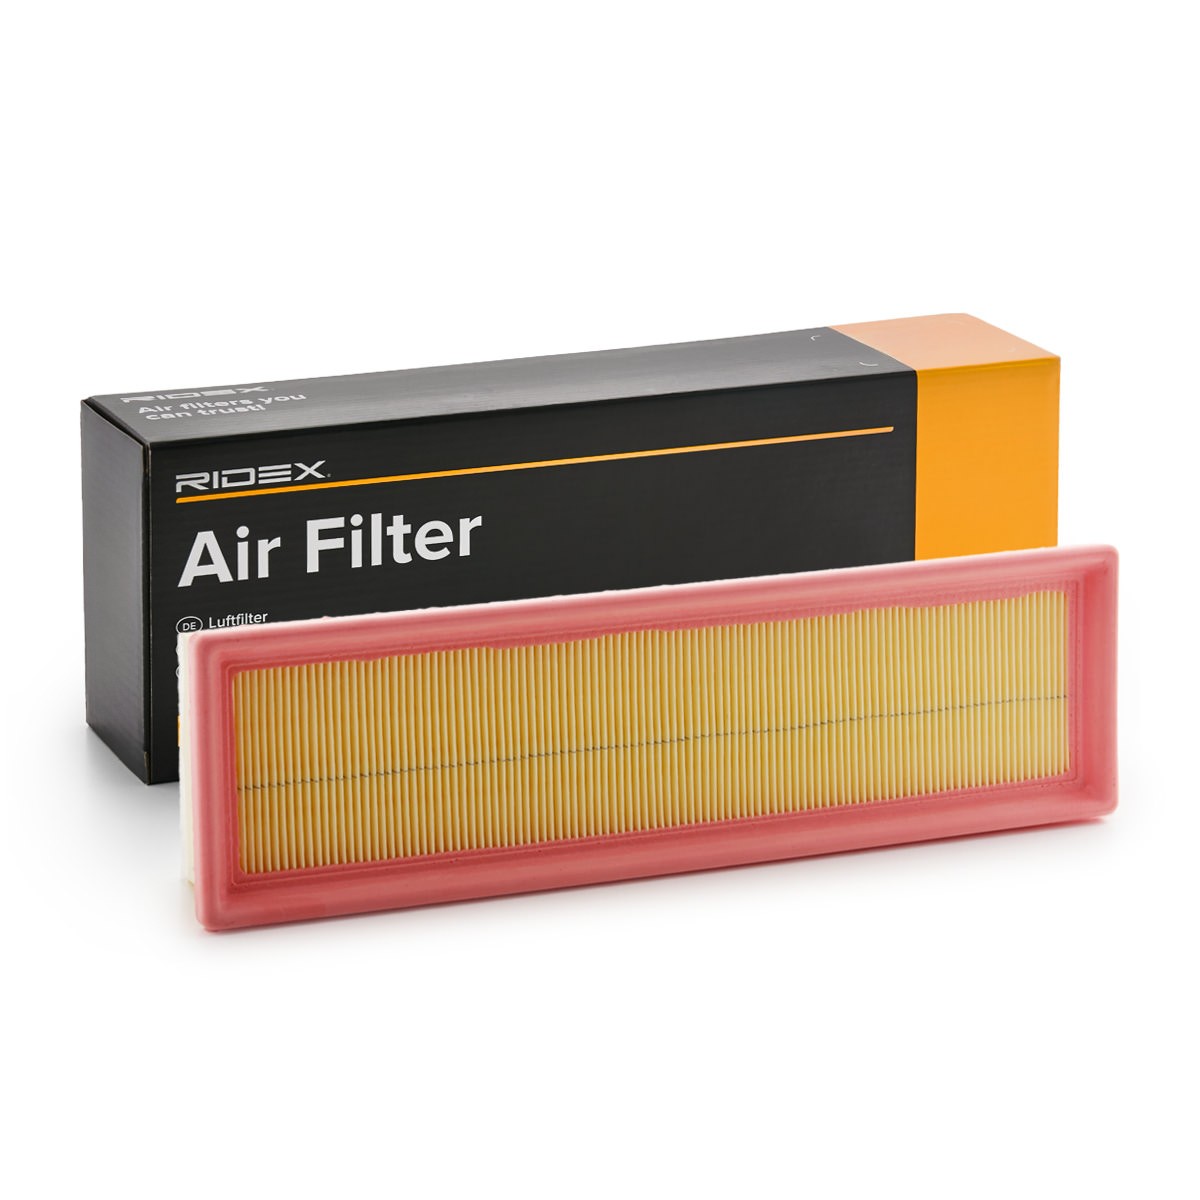 RIDEX 8A0628 Air filter 59mm, 97mm, 327mm, rectangular, Foam, Air Recirculation Filter, with pre-filter